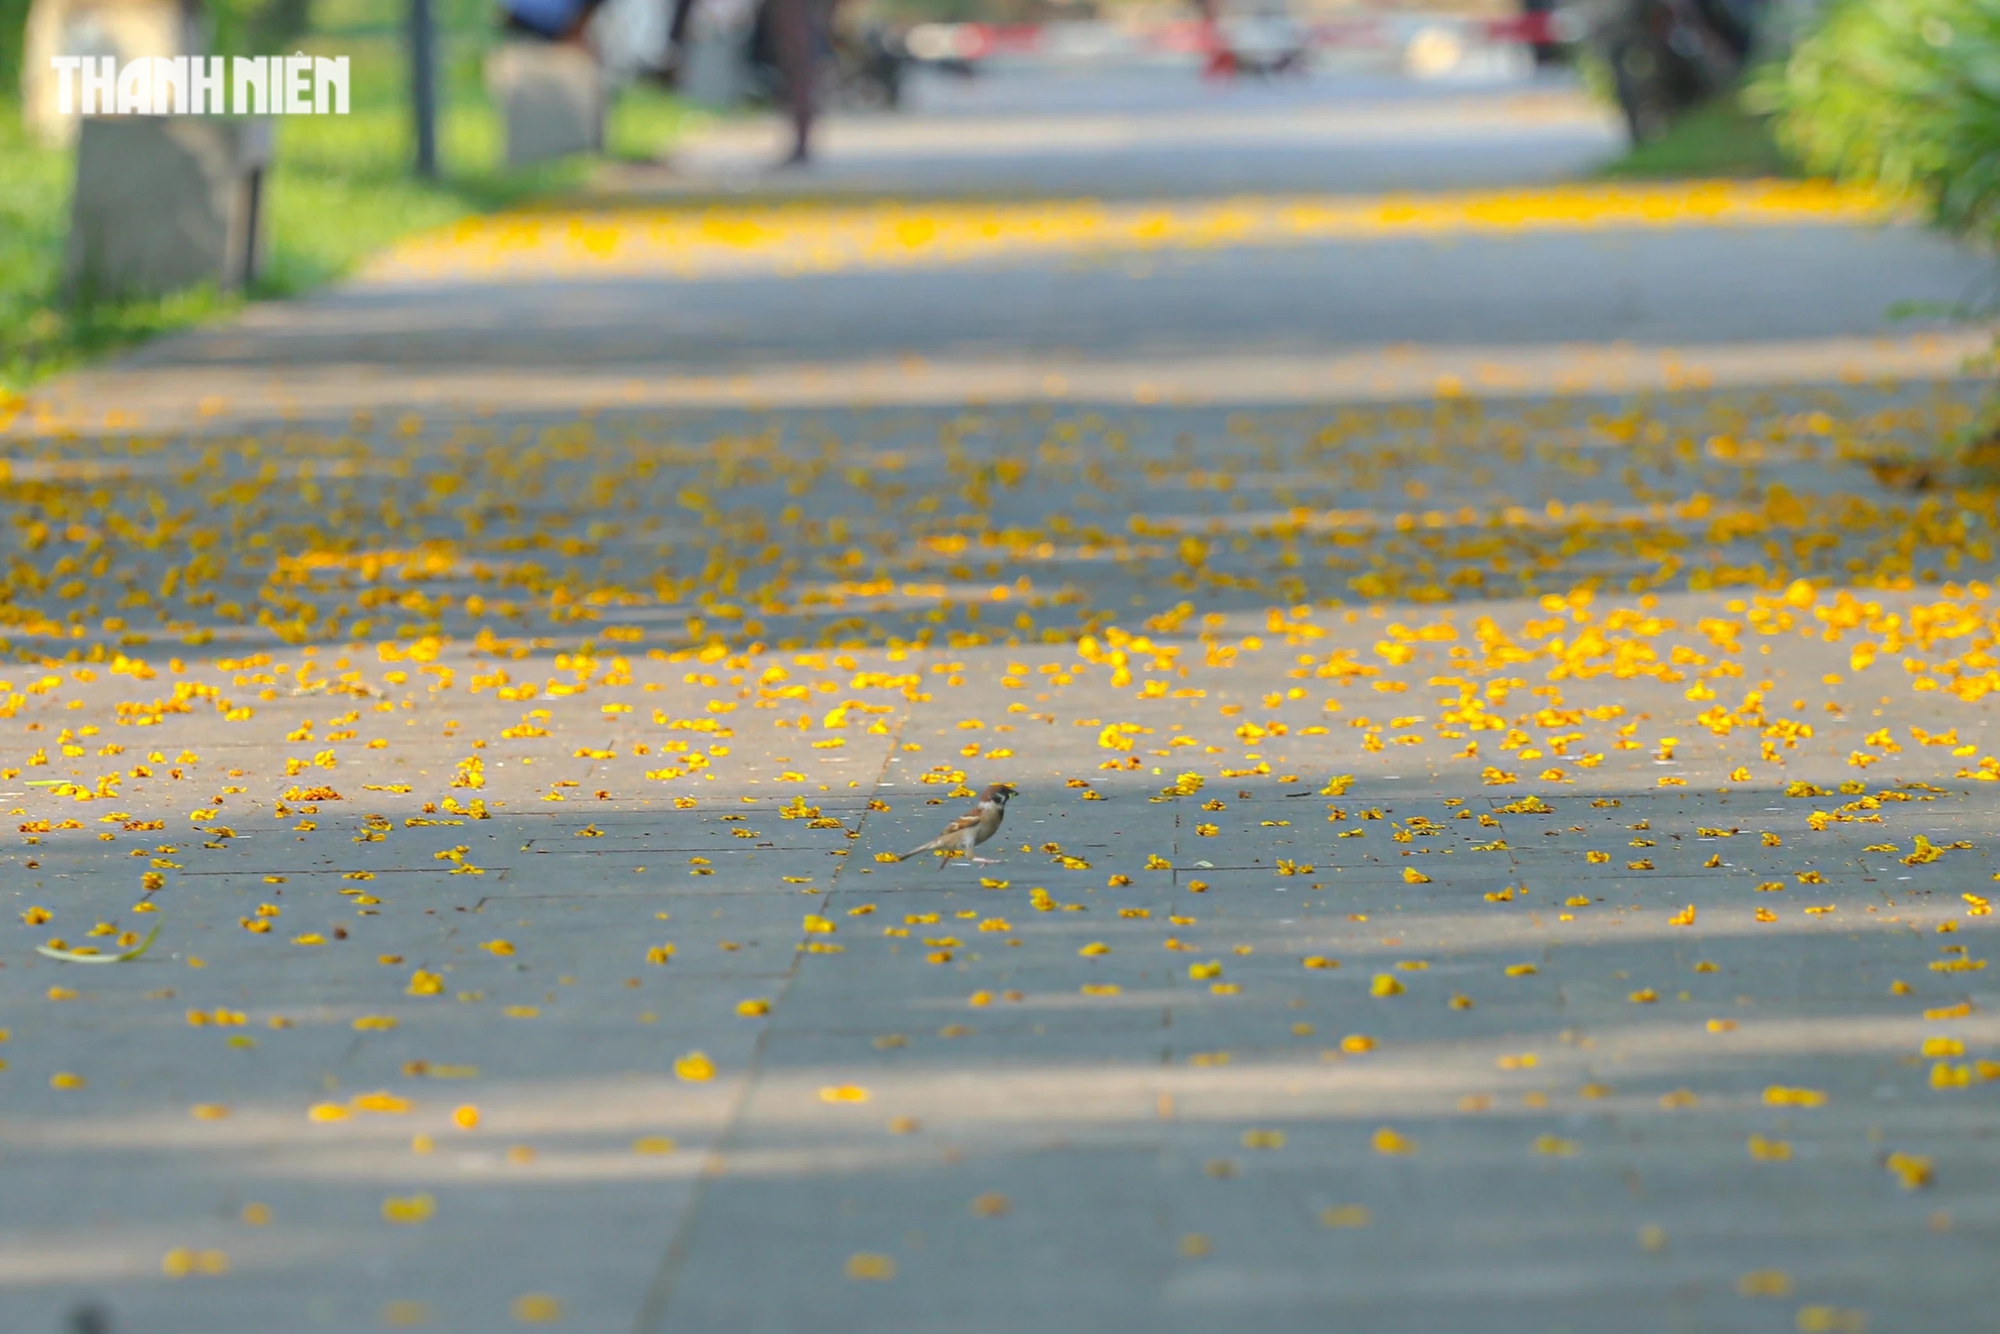 Sau cơn gió, hàng ngàn cánh hoa điệp rơi rụng, tạo thành một dải lụa sặc sỡ, trải dài các con đường trong công viên xứ Huế